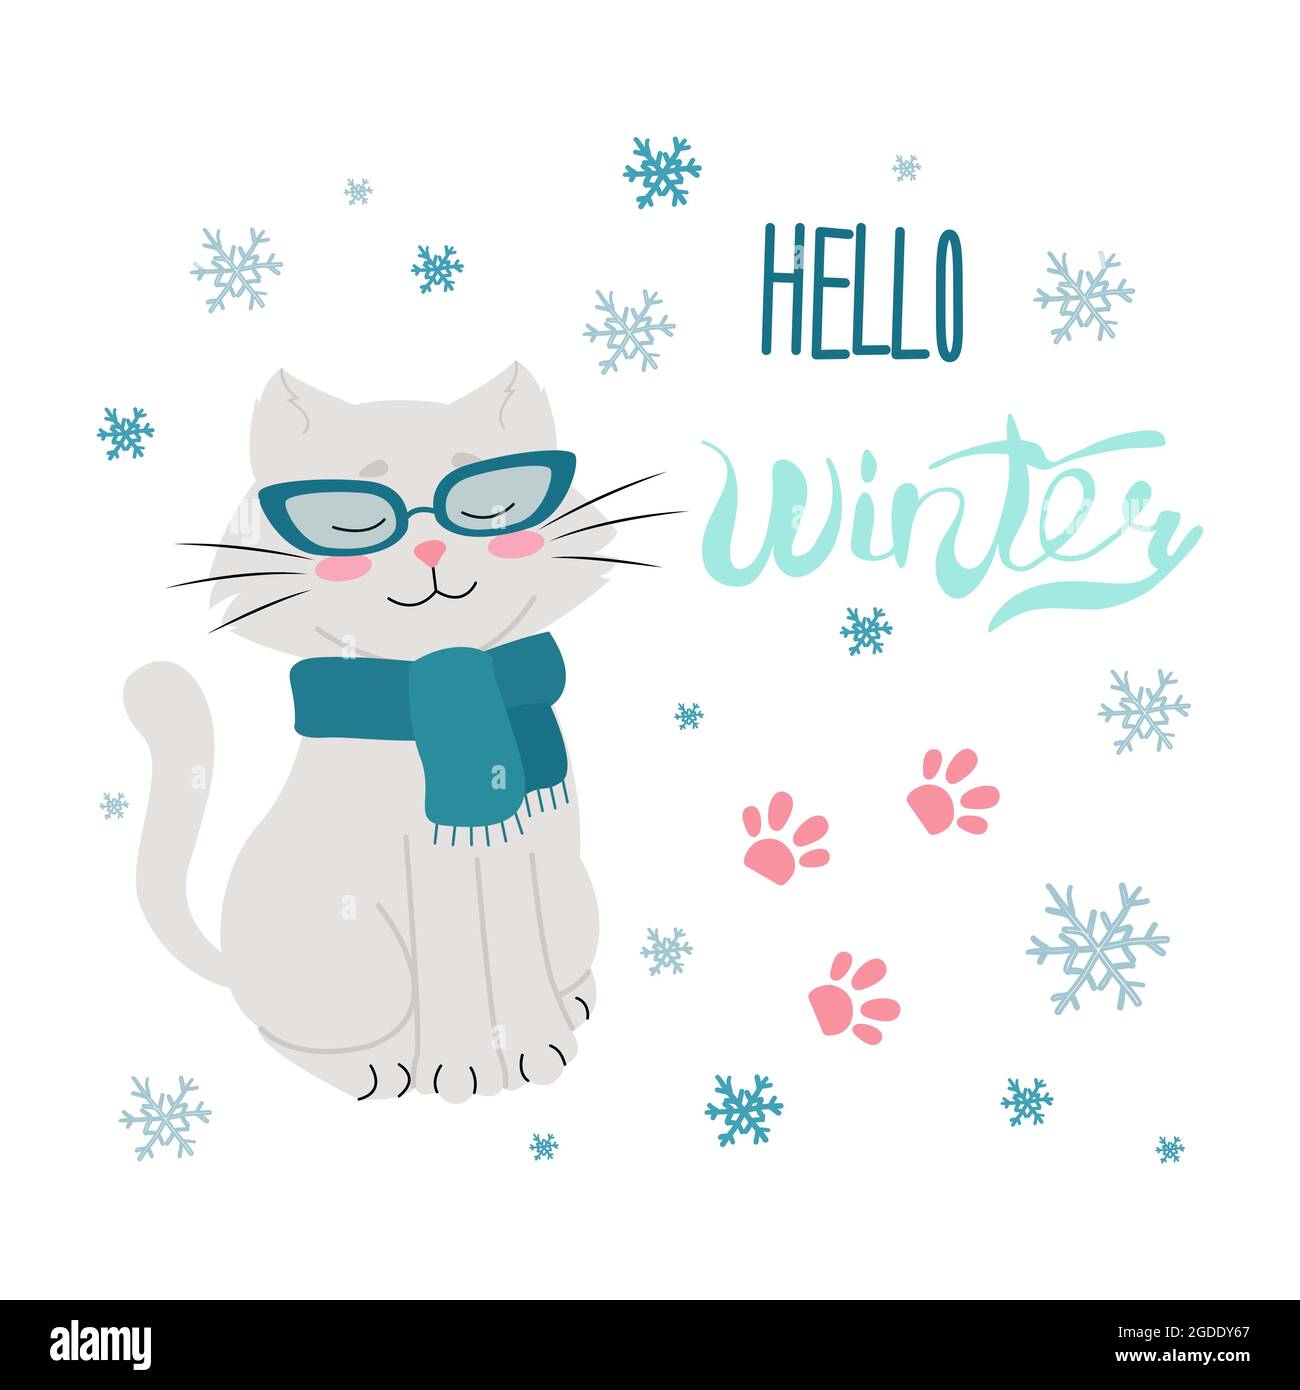 Chat en verres avec foulard, manuscrit Hello Winter, lettrage. Illustration vectorielle de style plat. Flocons de neige Illustration de Vecteur